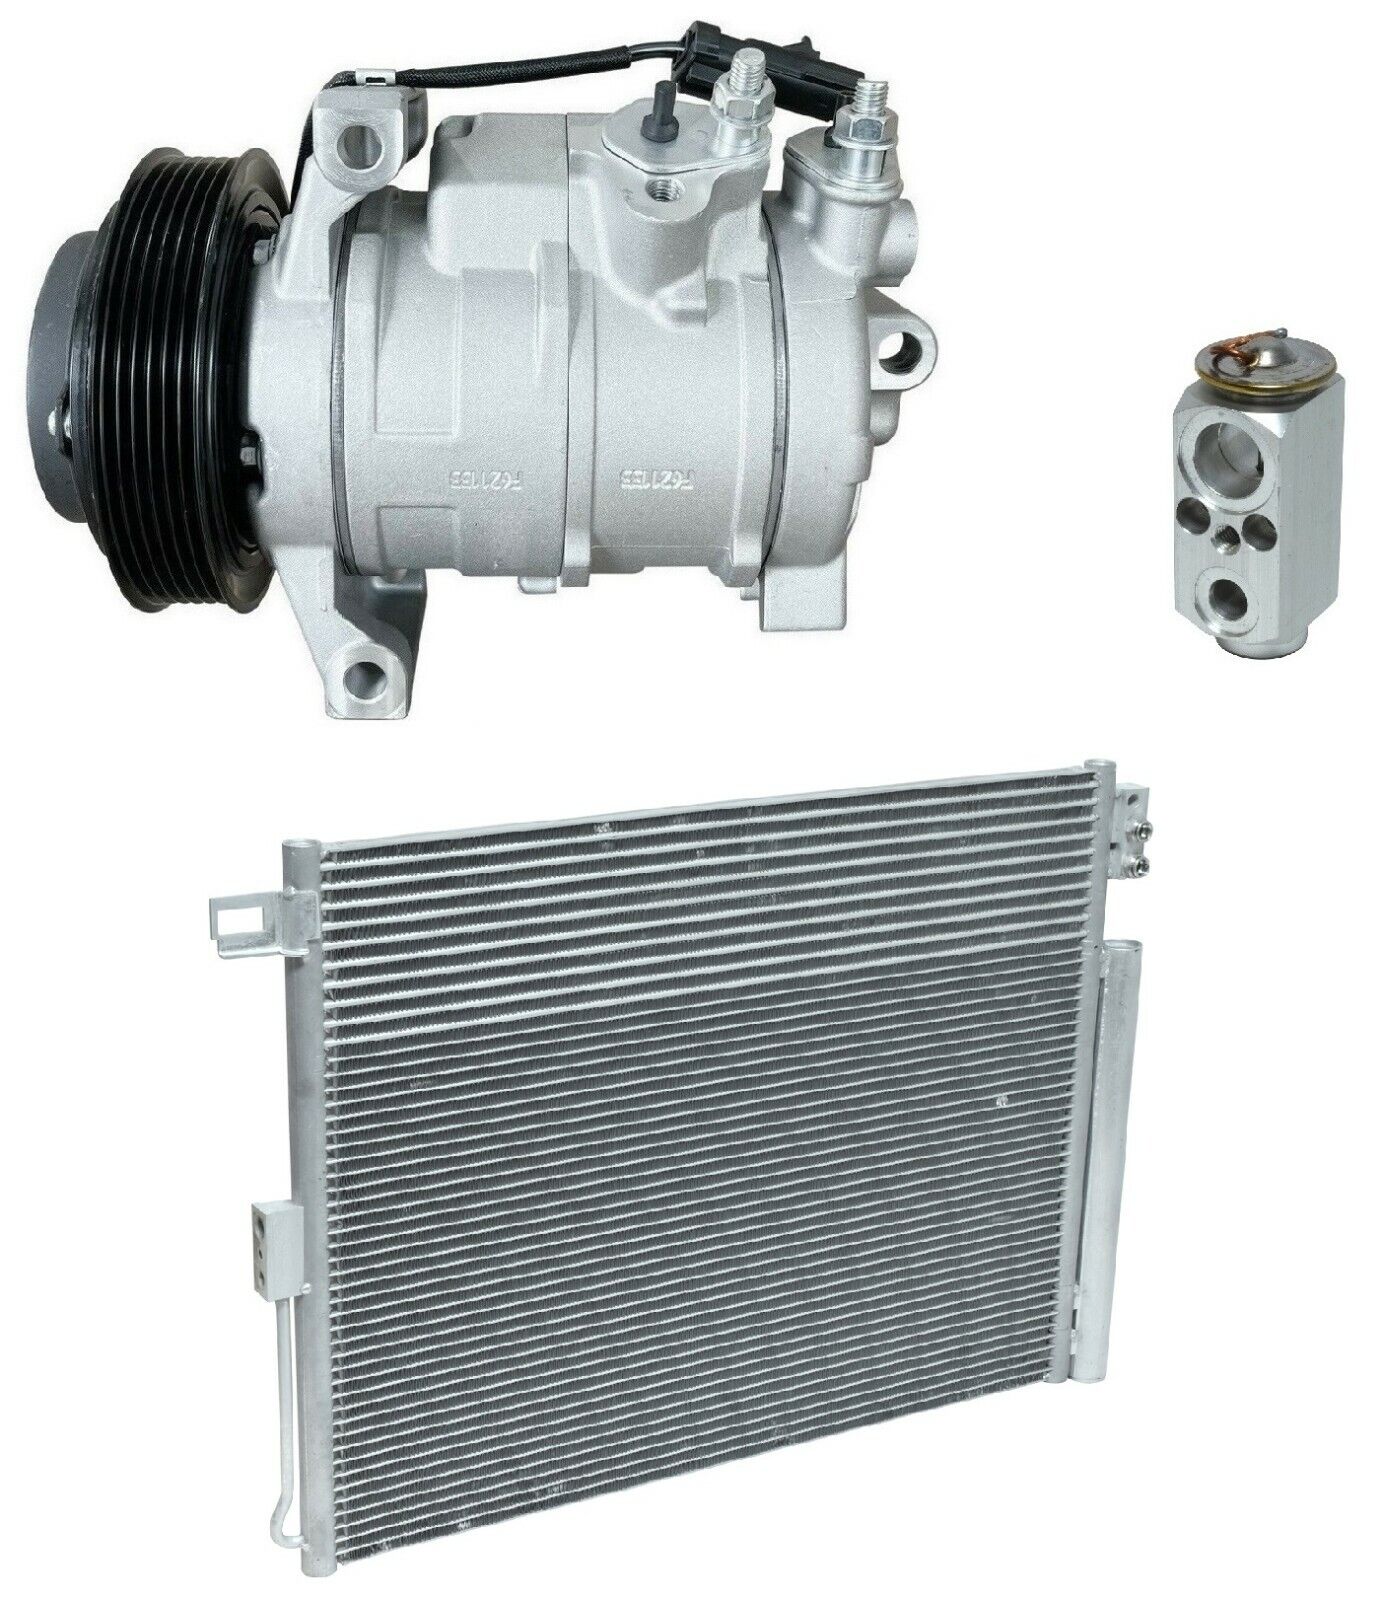 NEW RYC AC Compressor Kit W/ Condenser FA88A-N Fits Grand Cherokee 5.7L 2012